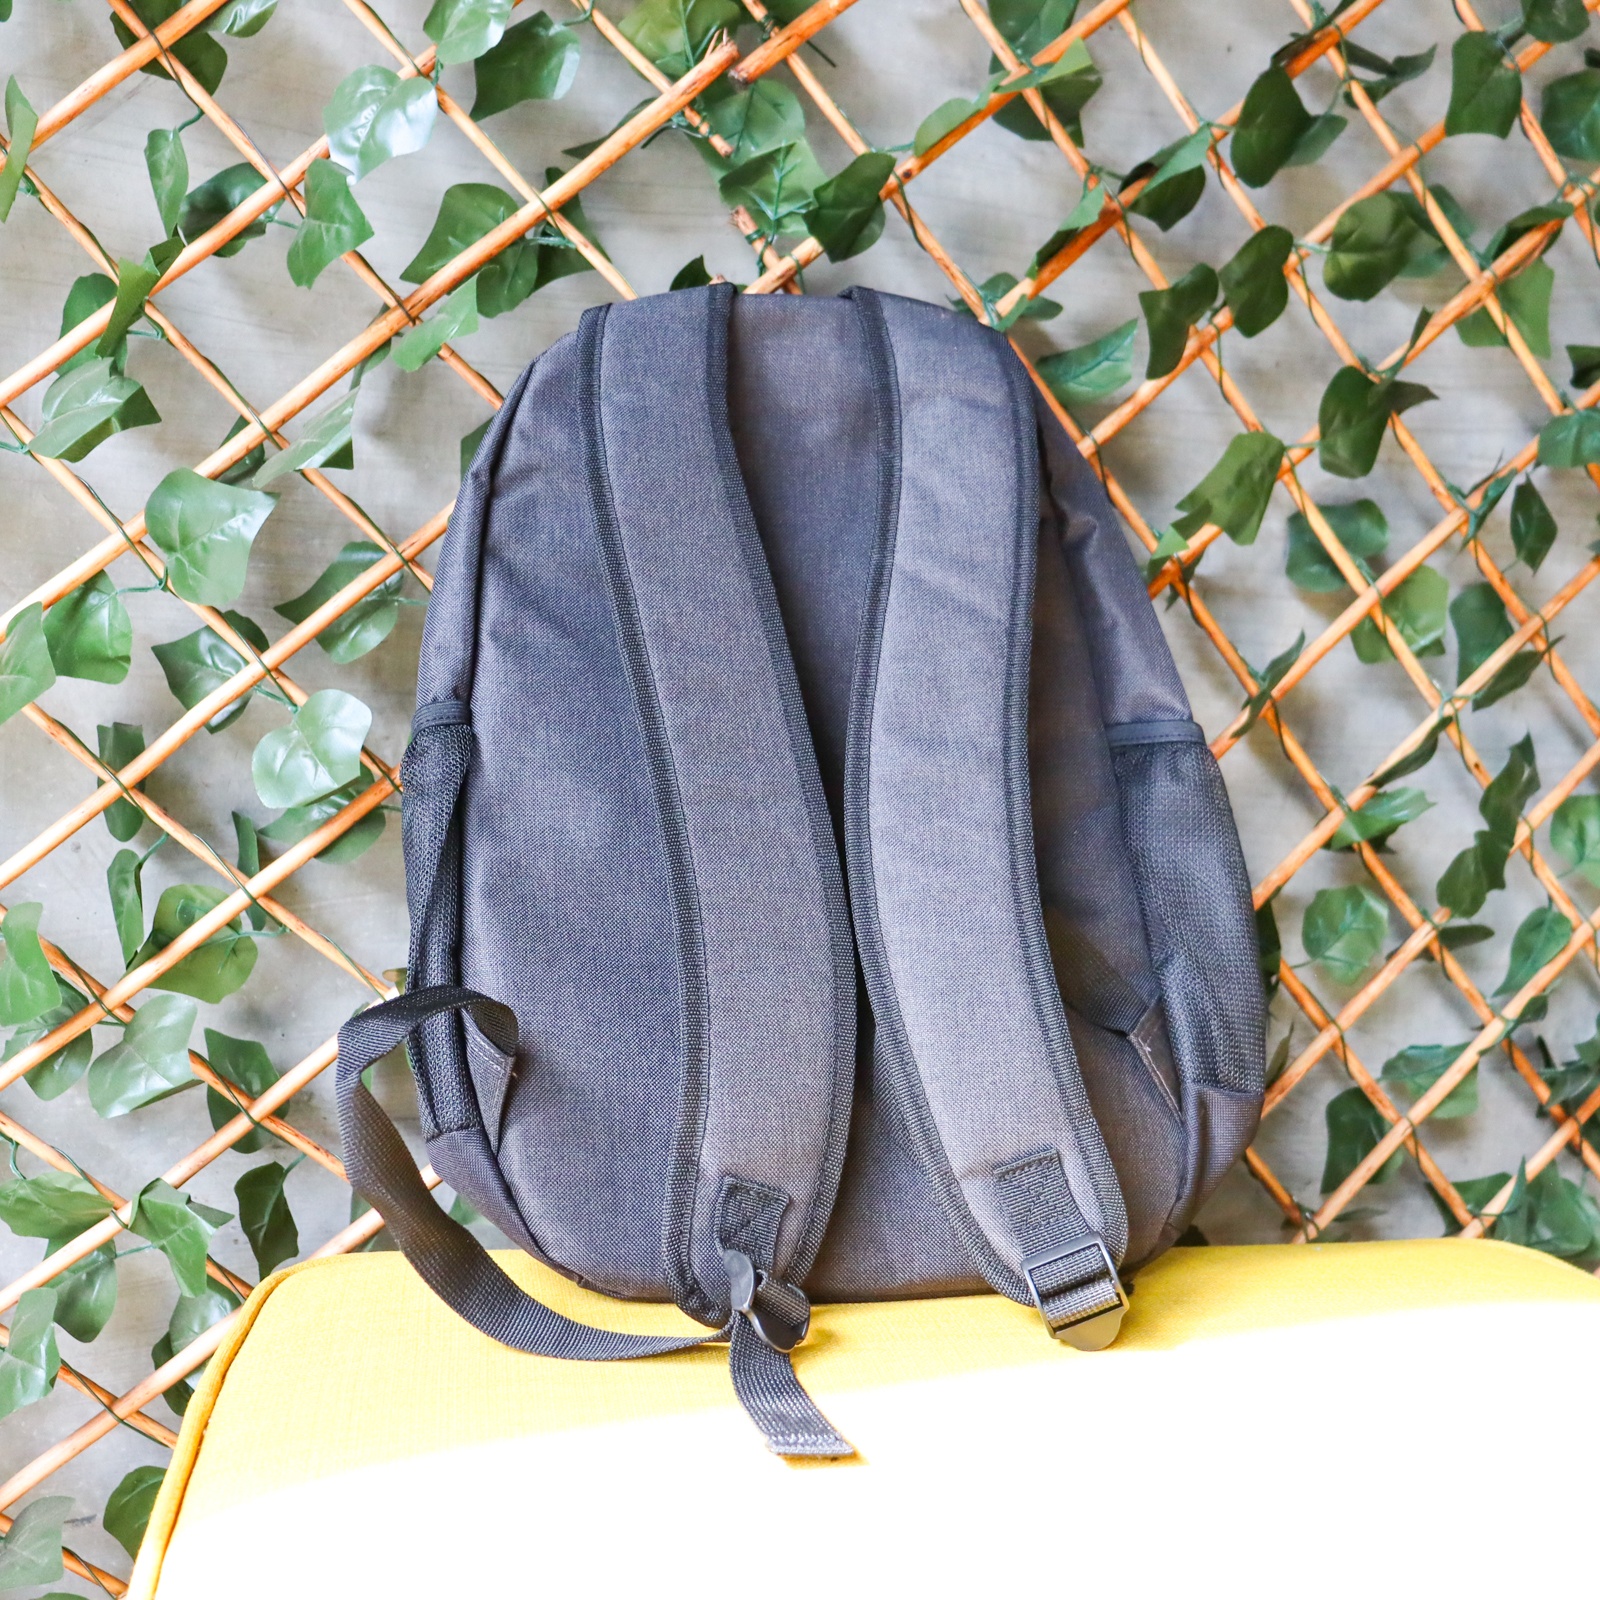 Personalised grey backpack